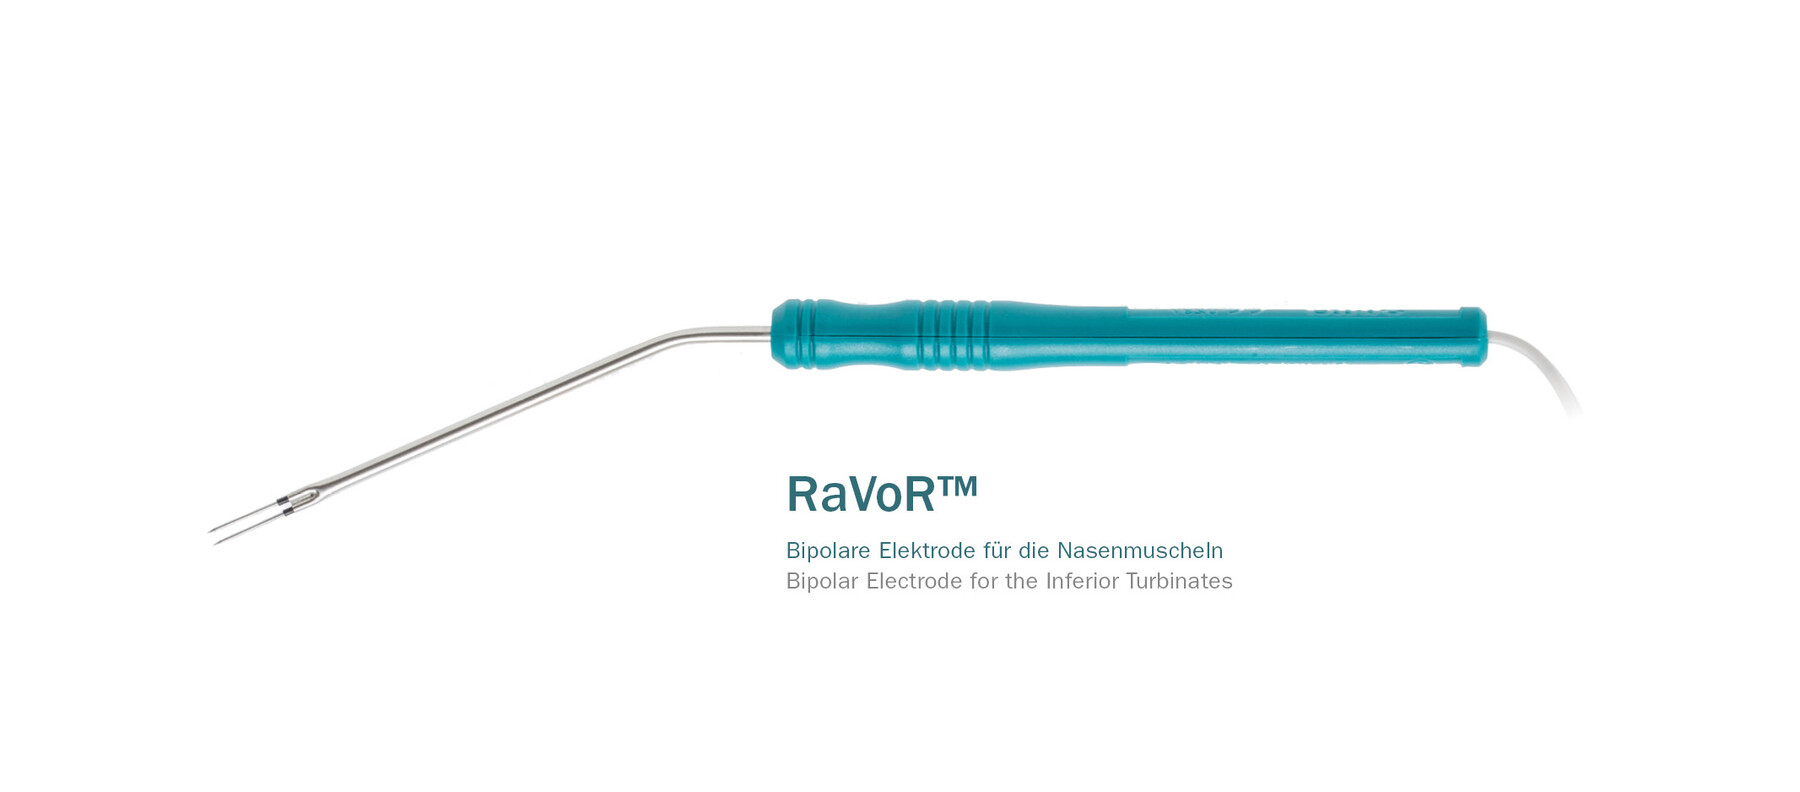 RaVoR™ Bipolar Electrodes single-use for the Inferior Turbinates